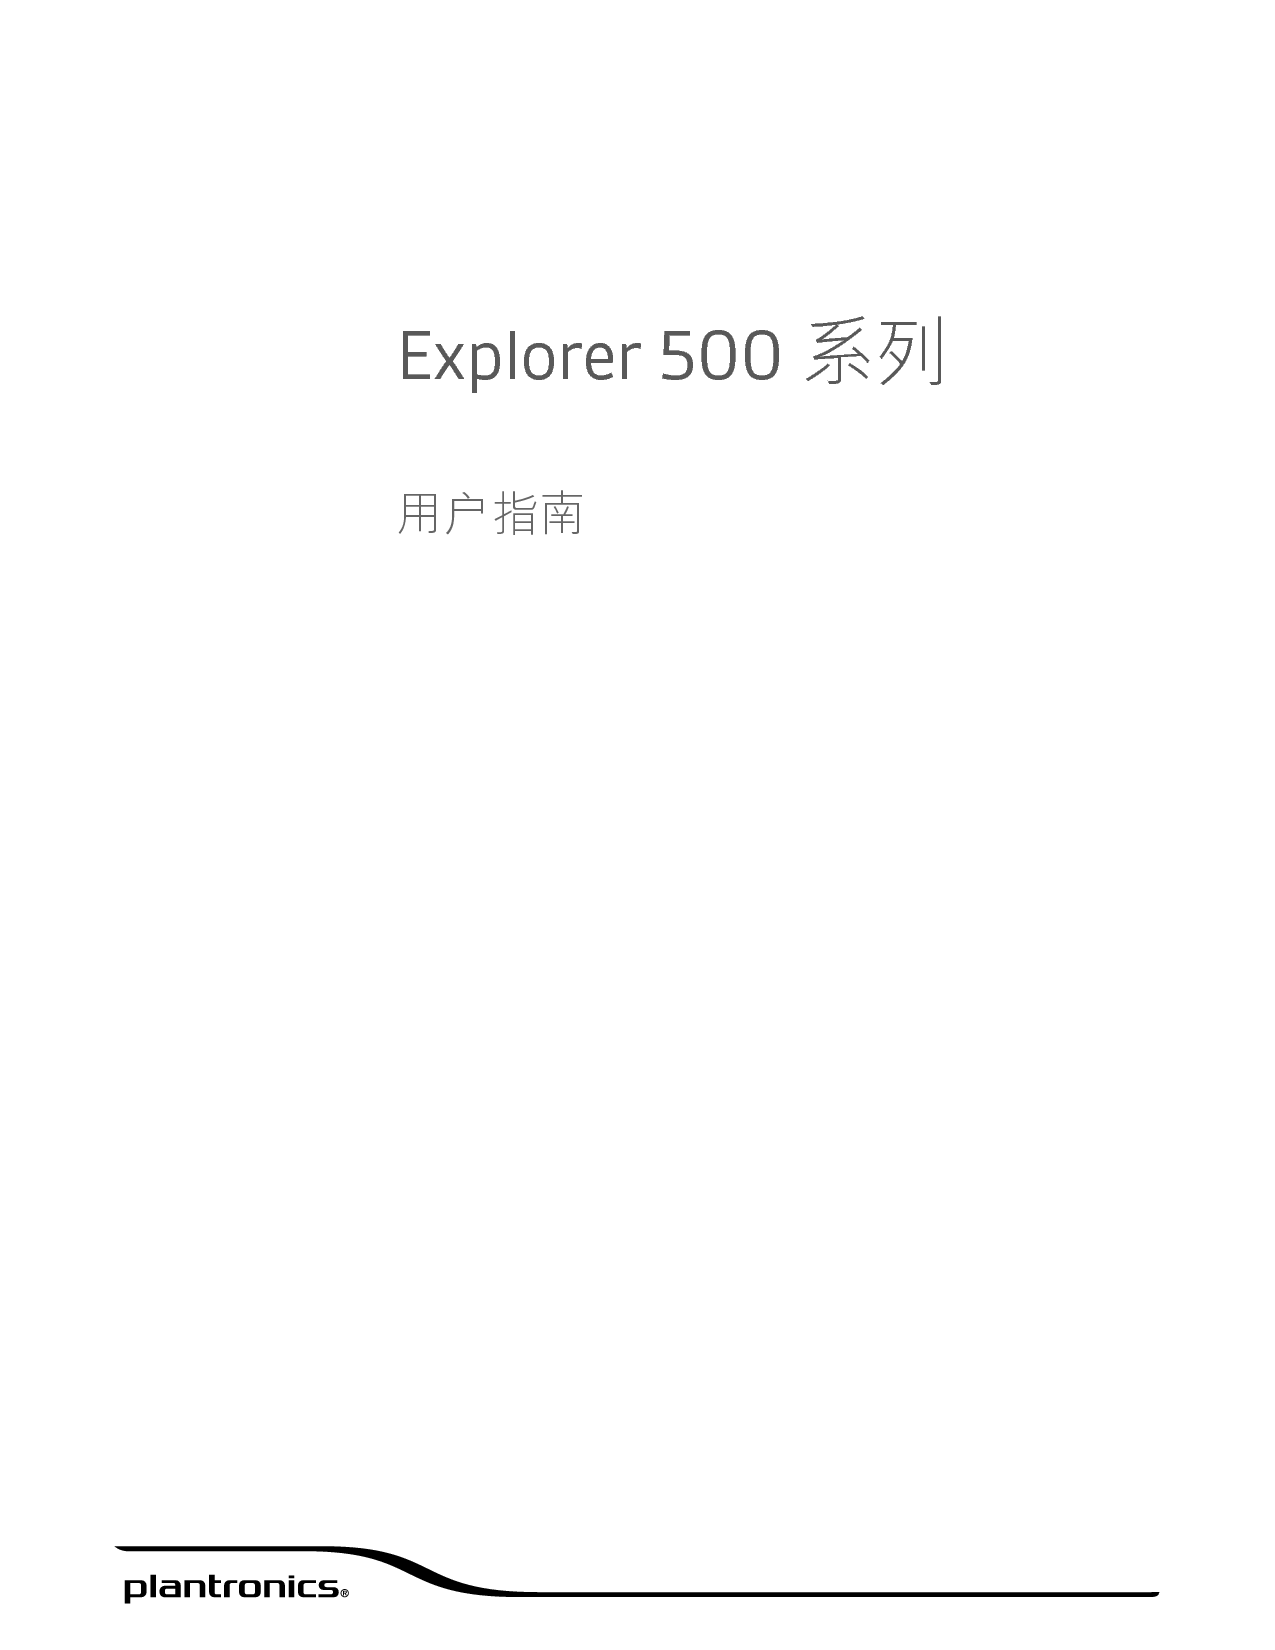 缤特力 Plantronics Explorer 500 用户指南 封面